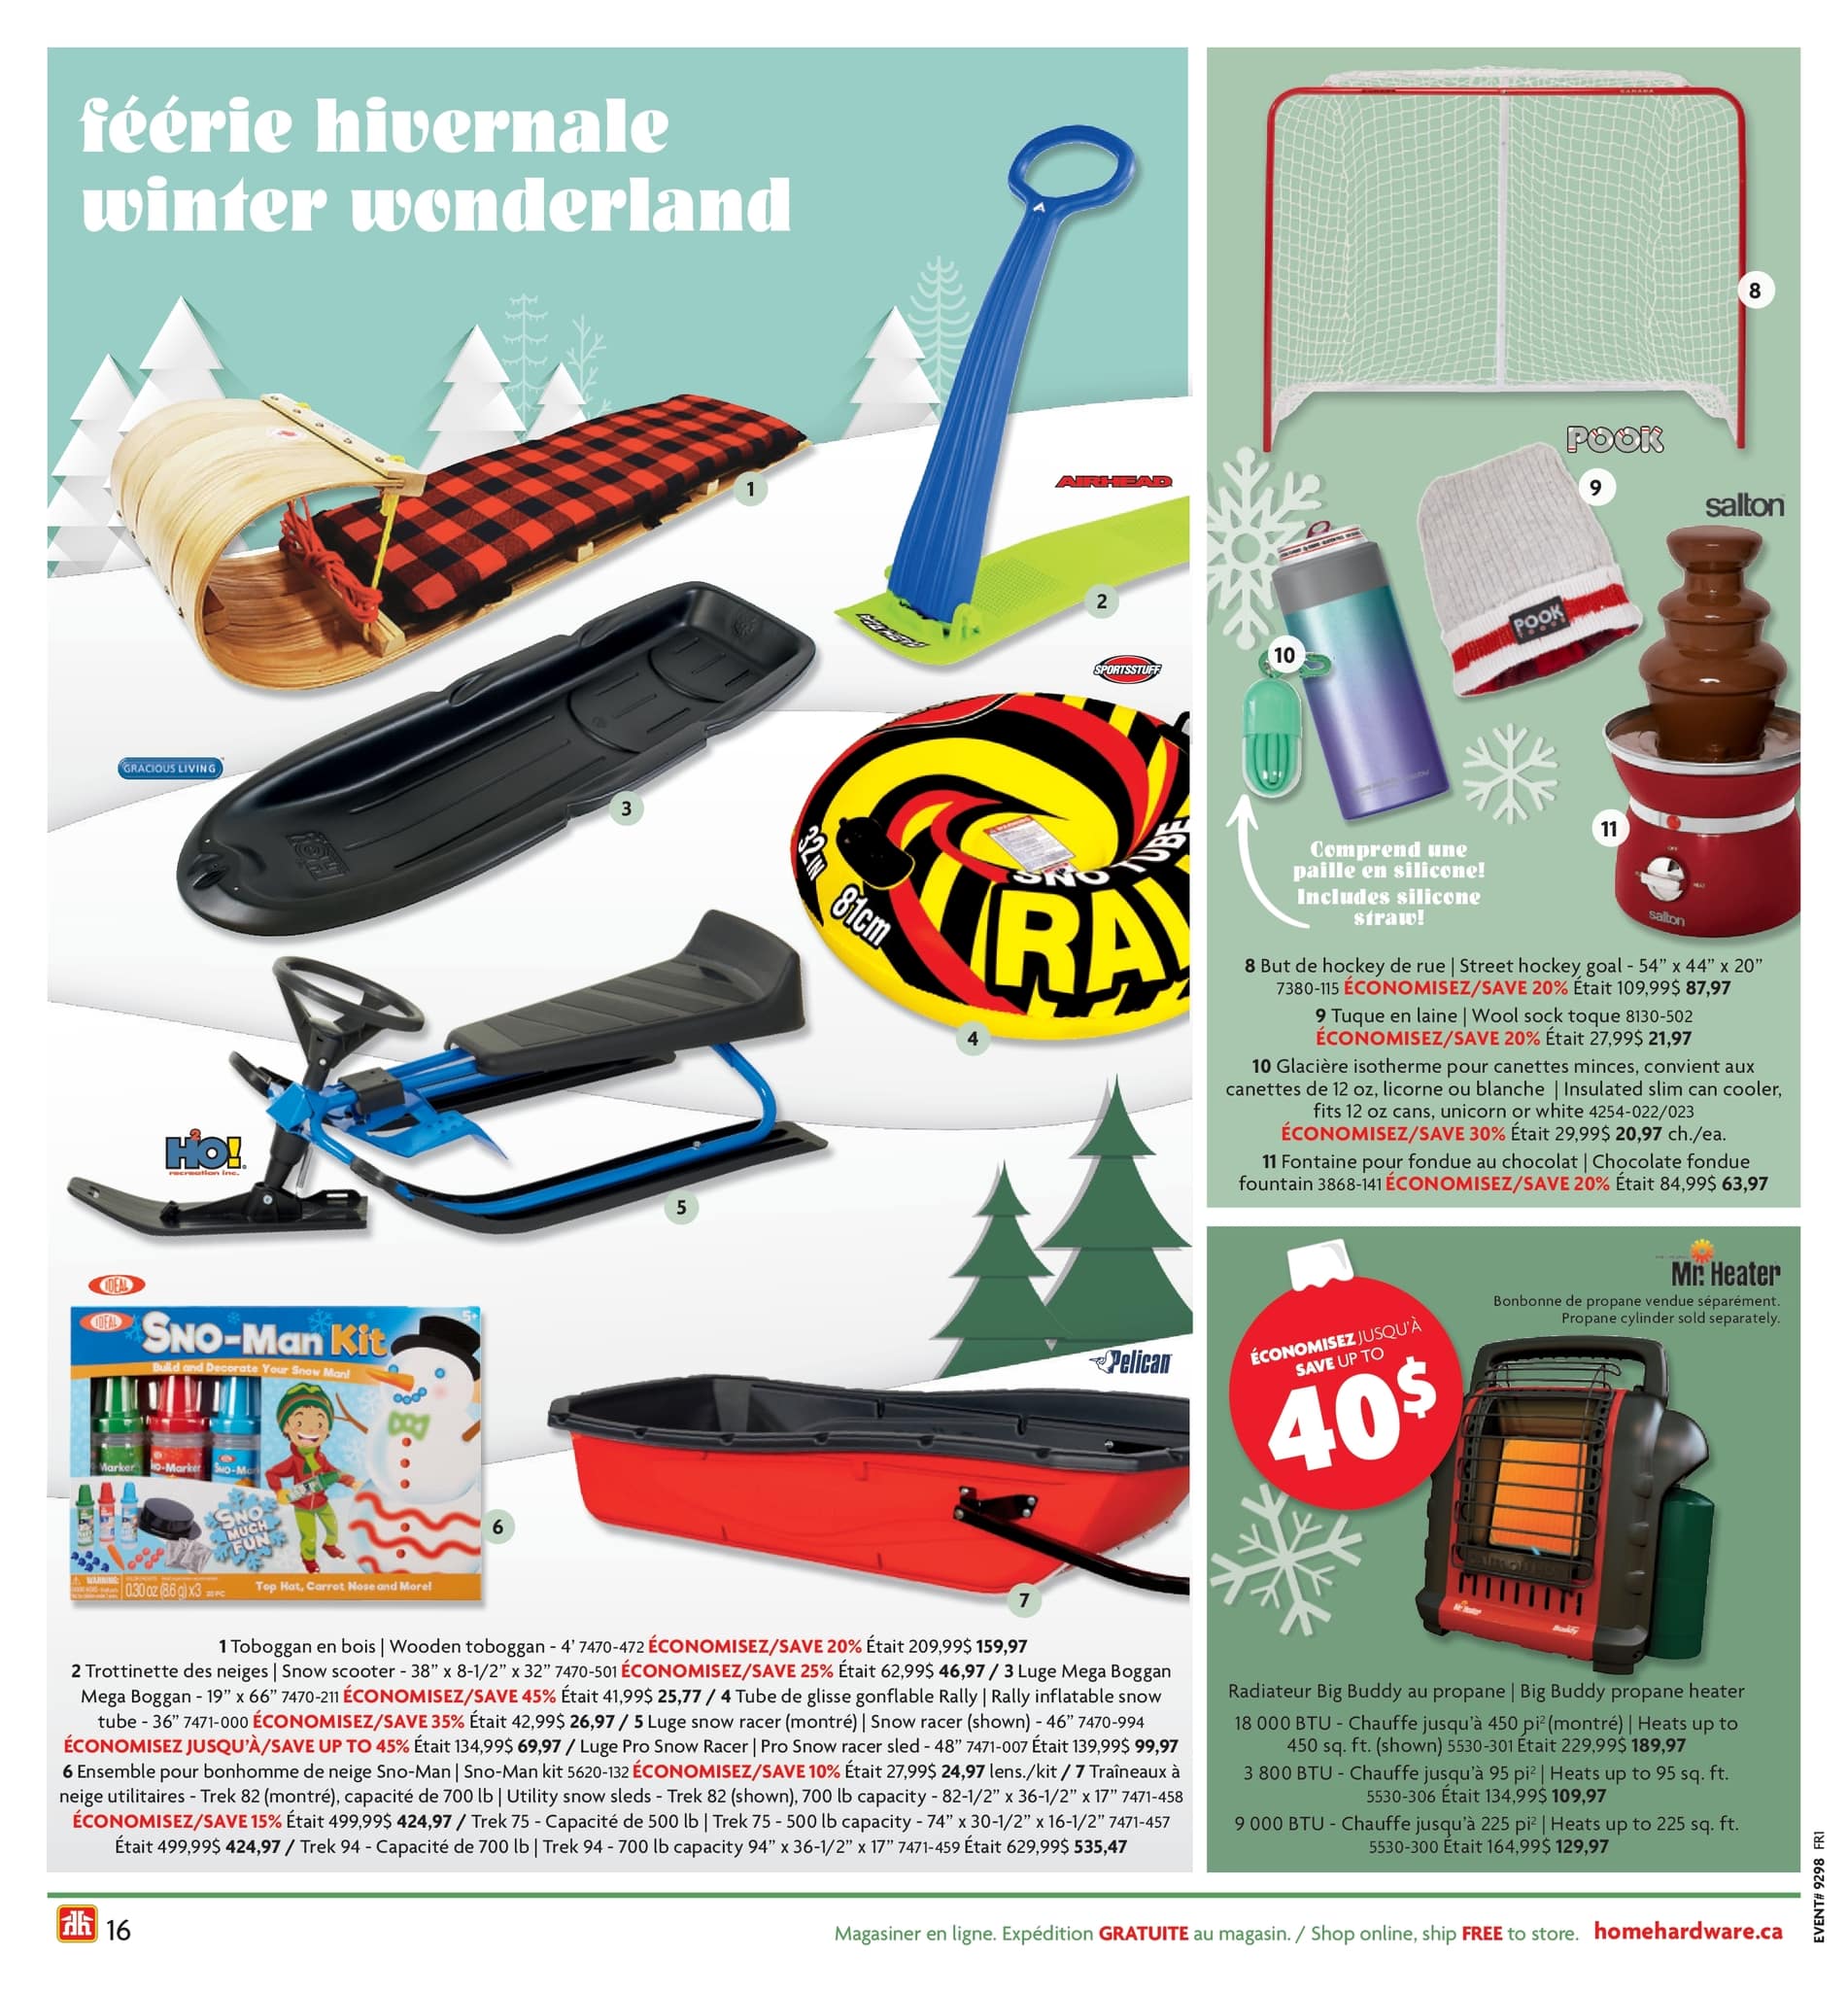 Home Hardware - Guide des cadeaux et des jouets des Fêtes - Page 16